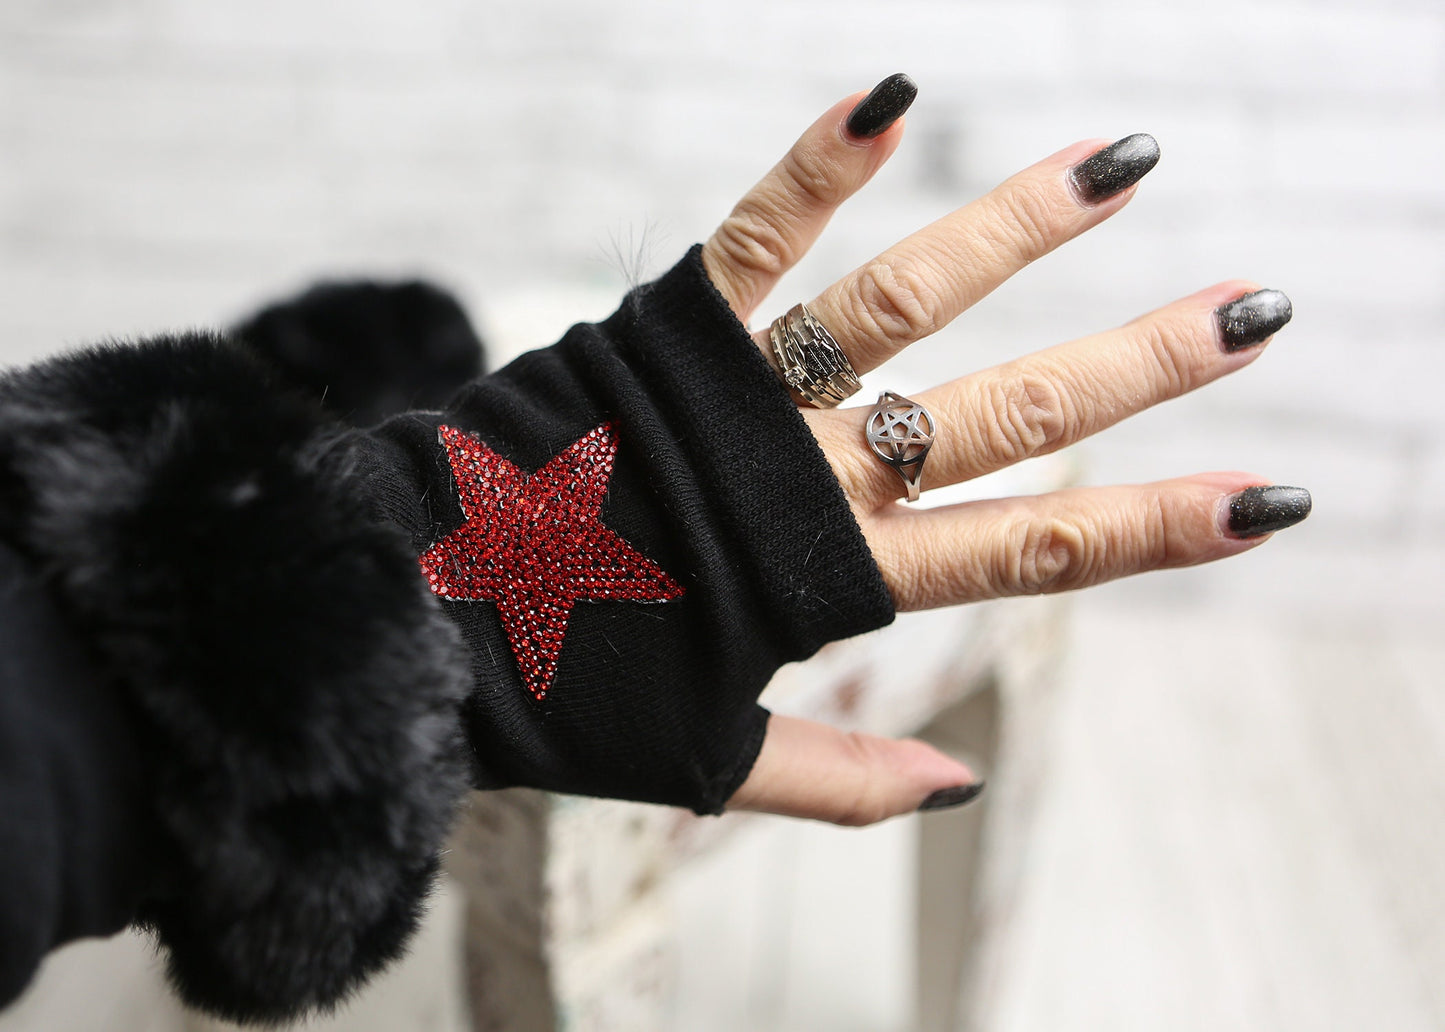 Blingy Red Star Fingerless Gloves